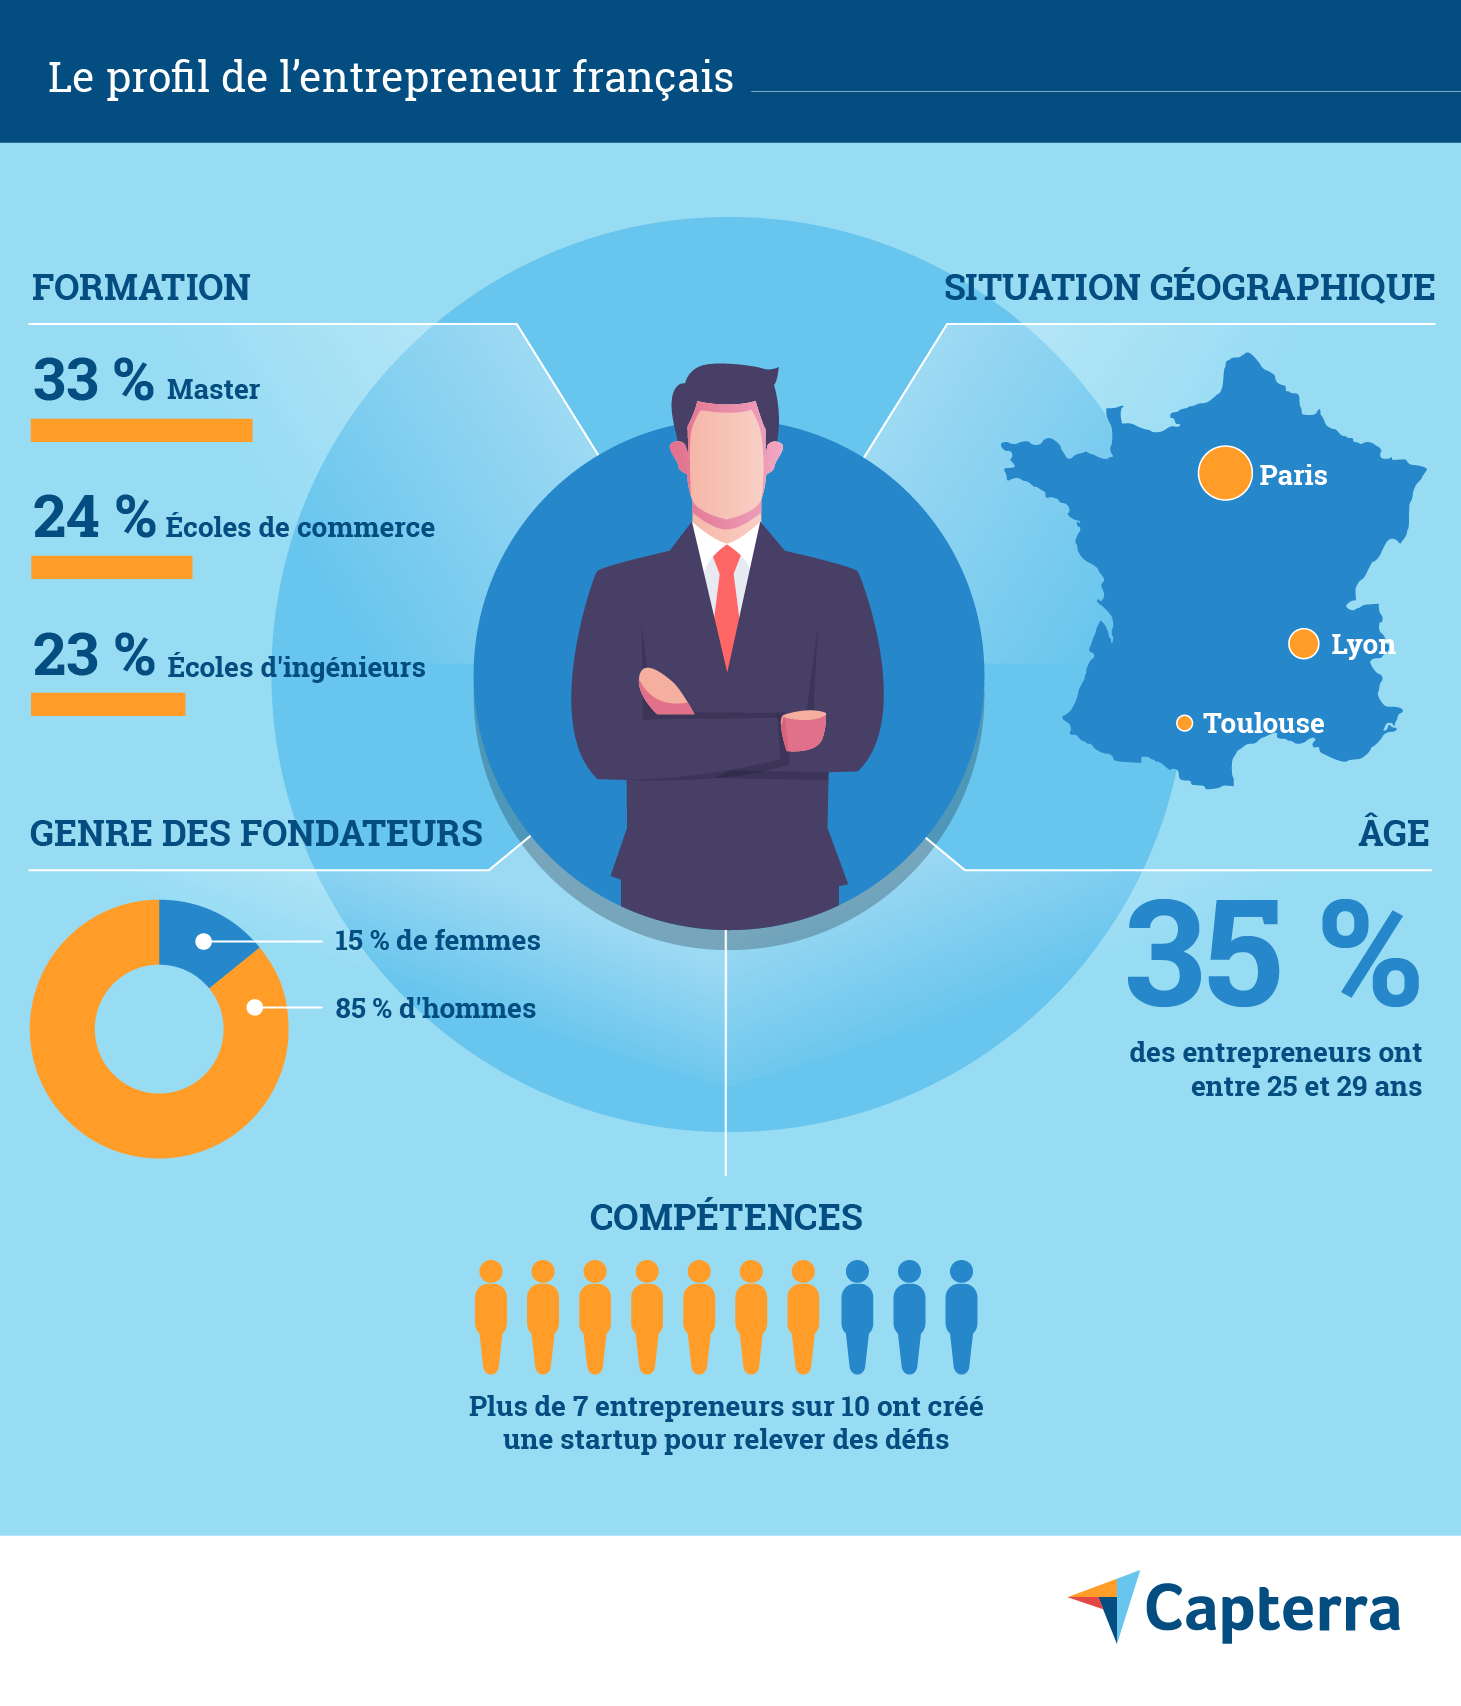 Le profil de l'entrepeneur français